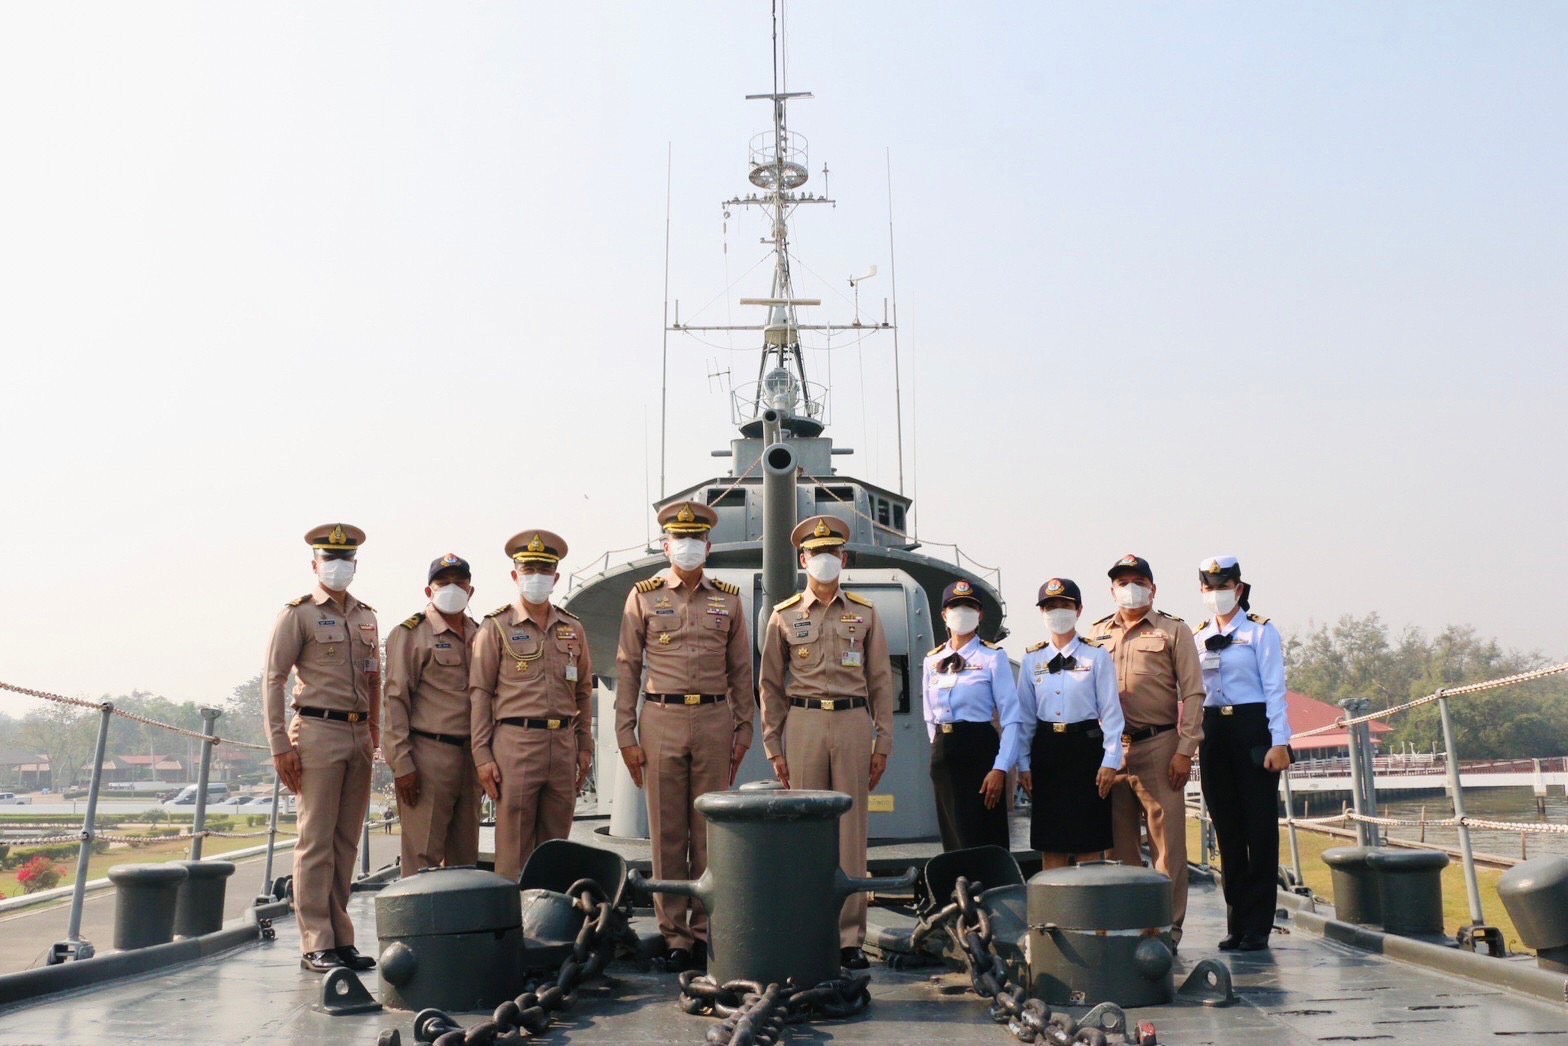 ศูนย์อำนวยการการท่องเที่ยวกองทัพเรือ ตรวจเยี่ยมแหล่งท่องเที่ยวกองทัพเรือ พื้นที่ป้อมพระจุลจอมเกล้า